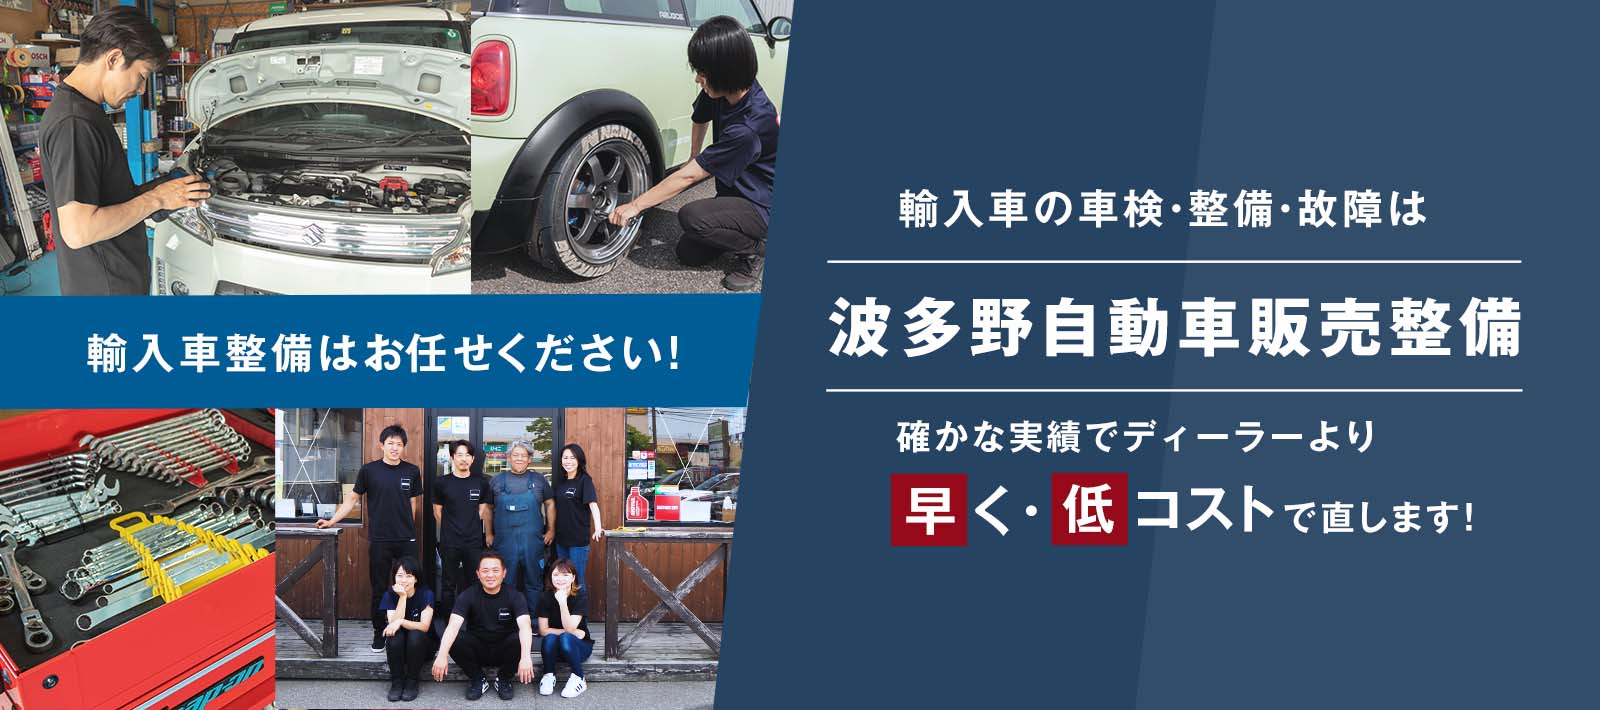 波多野自動車販売整備 | あらゆる輸入車・国産車の整備・車検・修理は新潟県新潟市・波多野自動車販売整備に任せください